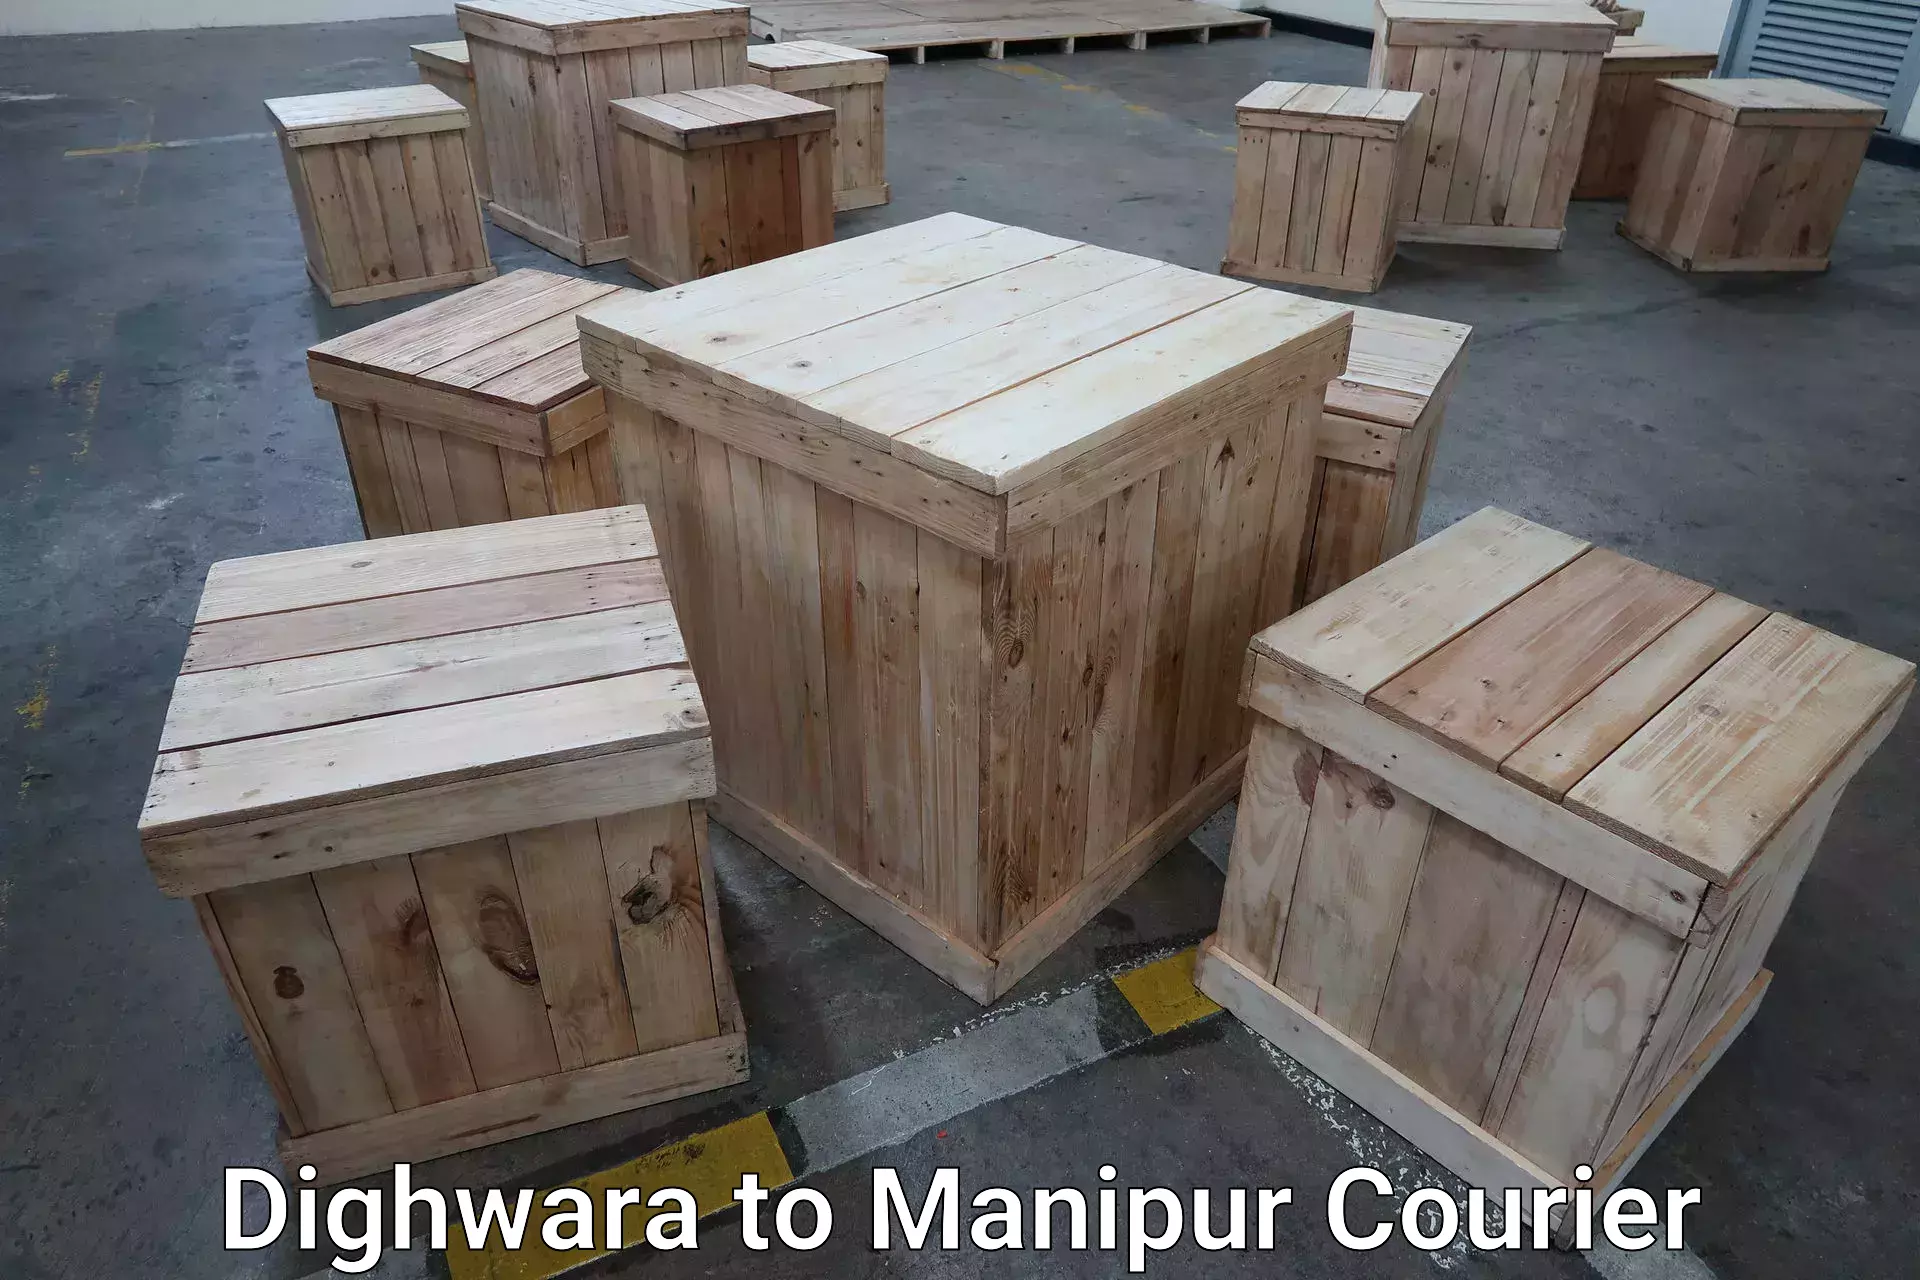 Baggage transport innovation Dighwara to Manipur